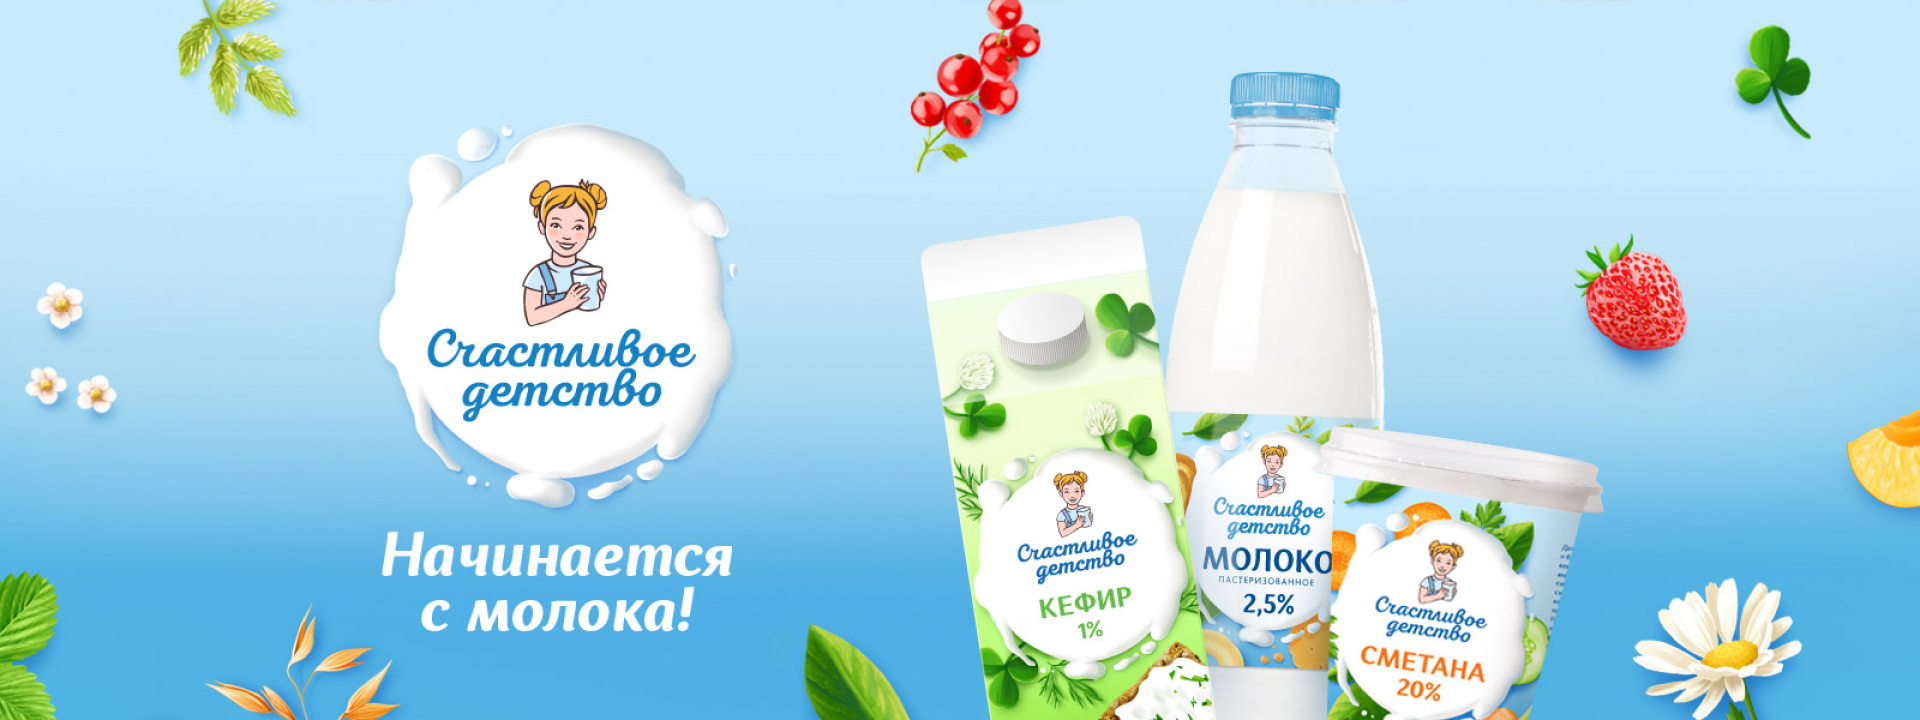 Разработка бренда молока Счастливое детство